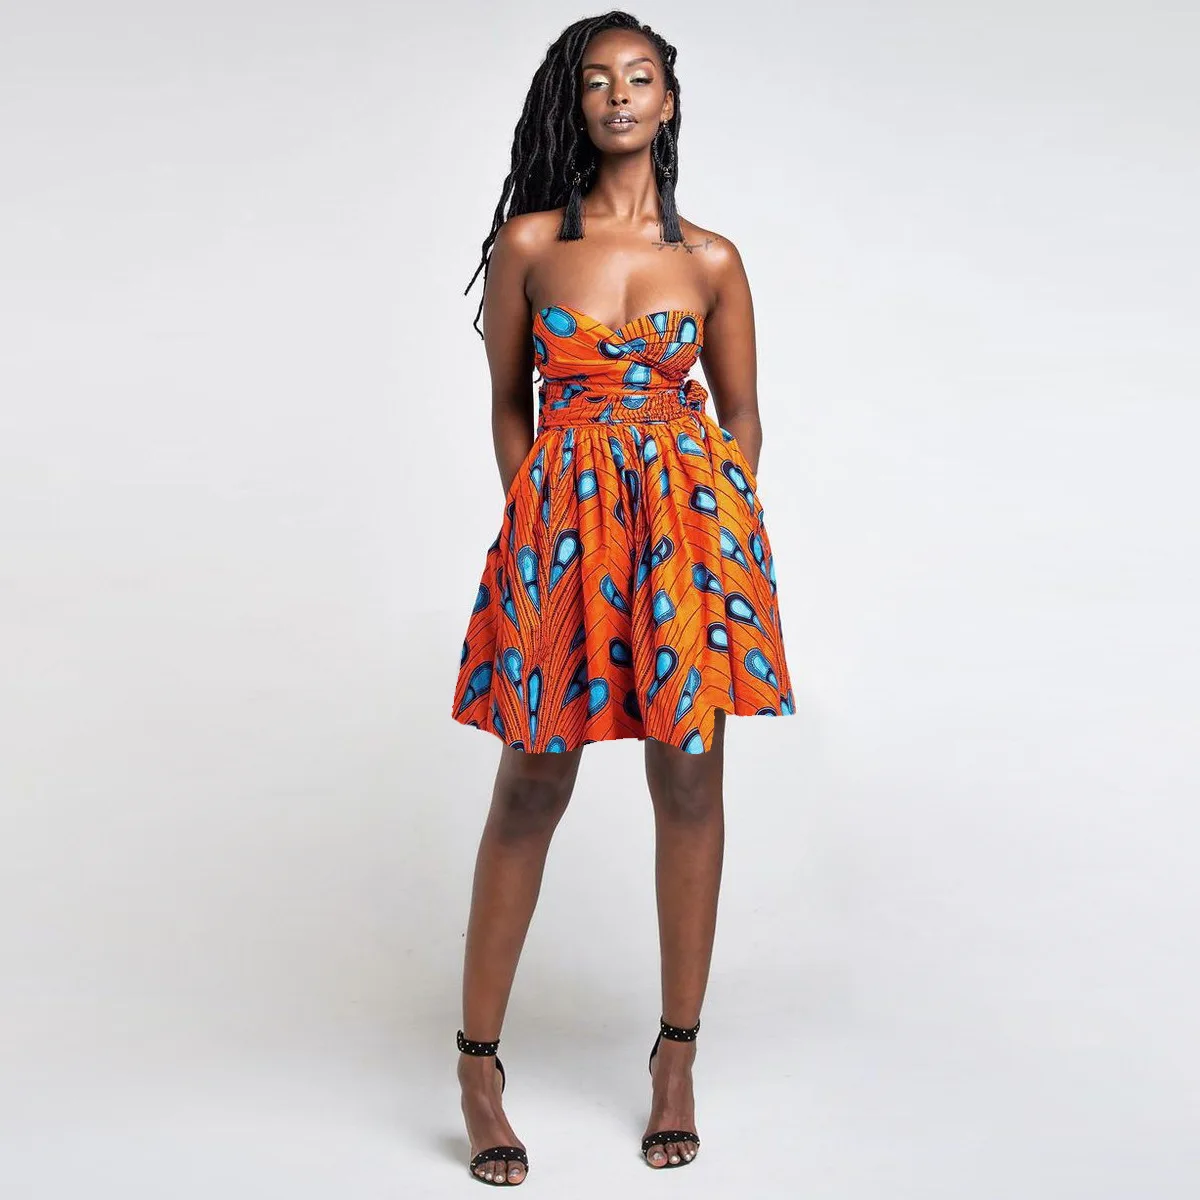 Африканские платья для женщин Африканский принт одежда Дашики Платье длинное Африканское платье африканские платья для женщин 2019 новый